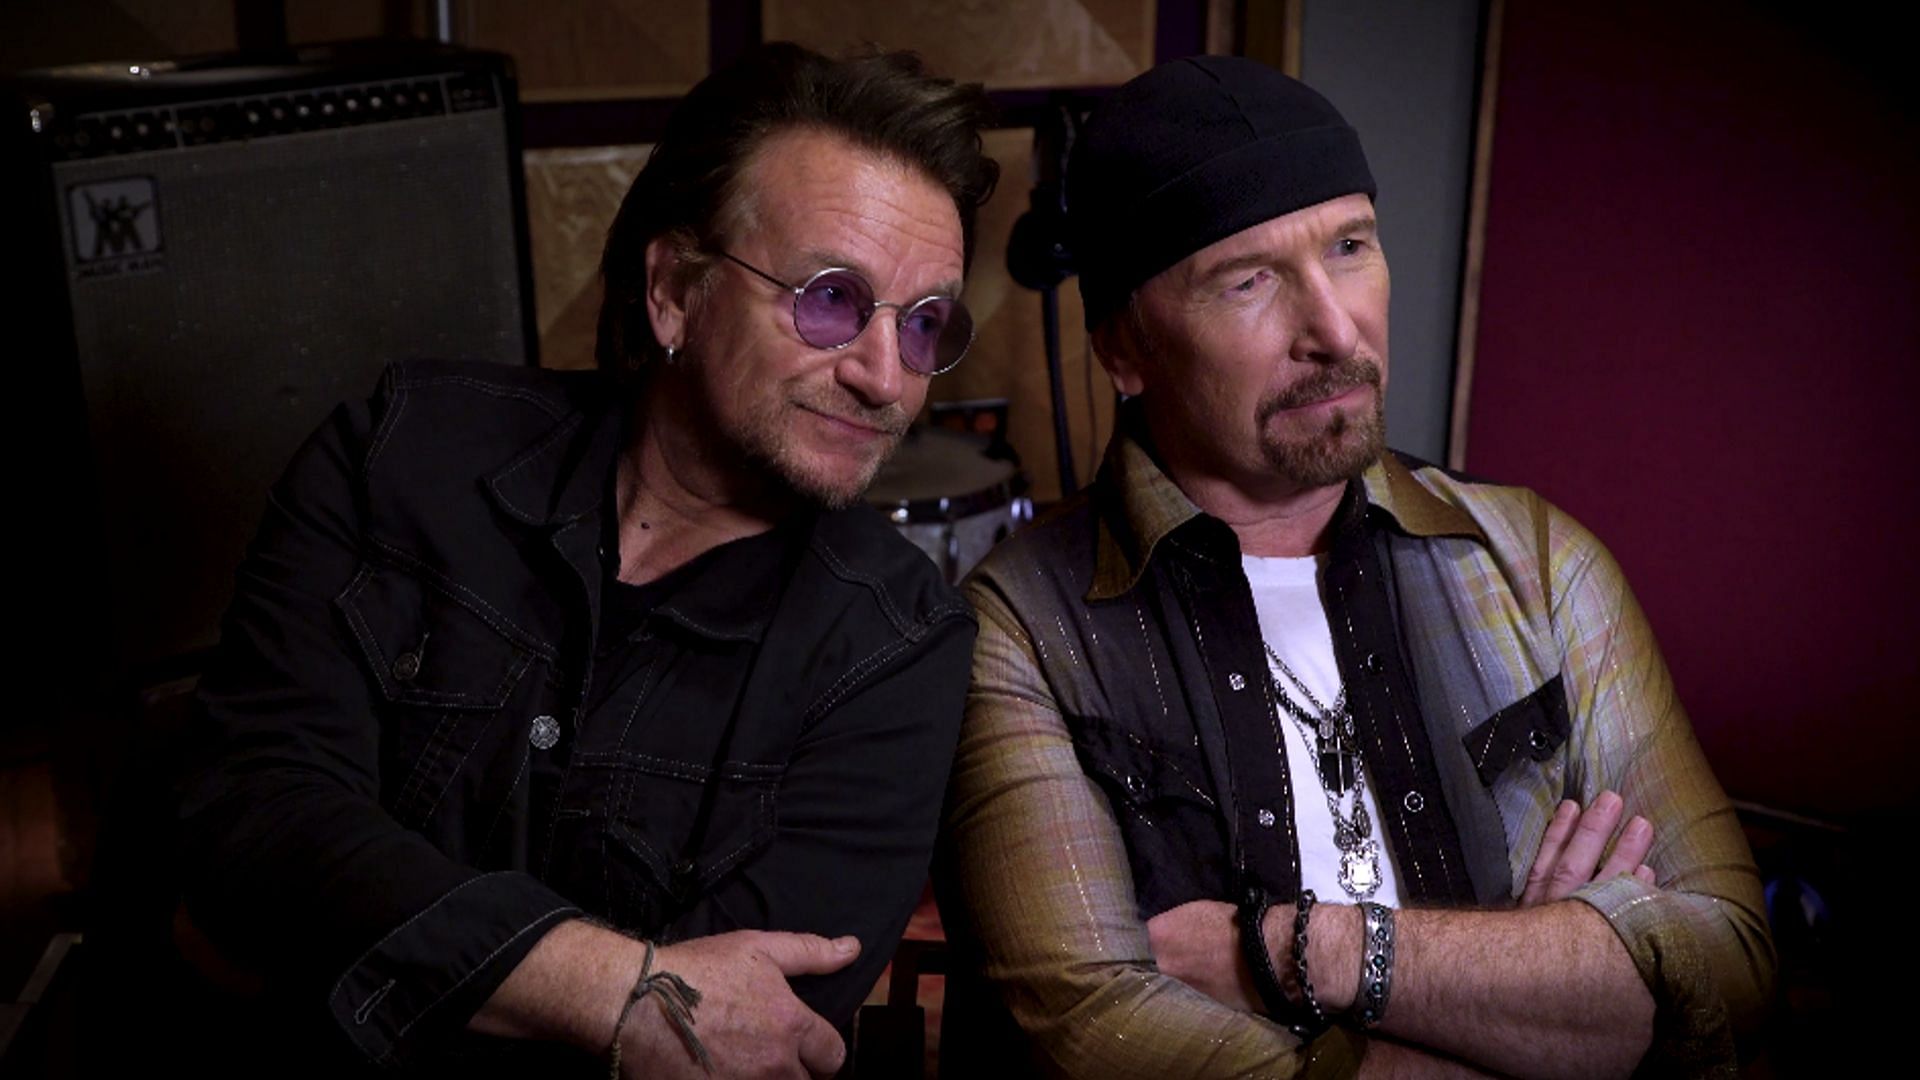 U2 band members Bono and the Edge